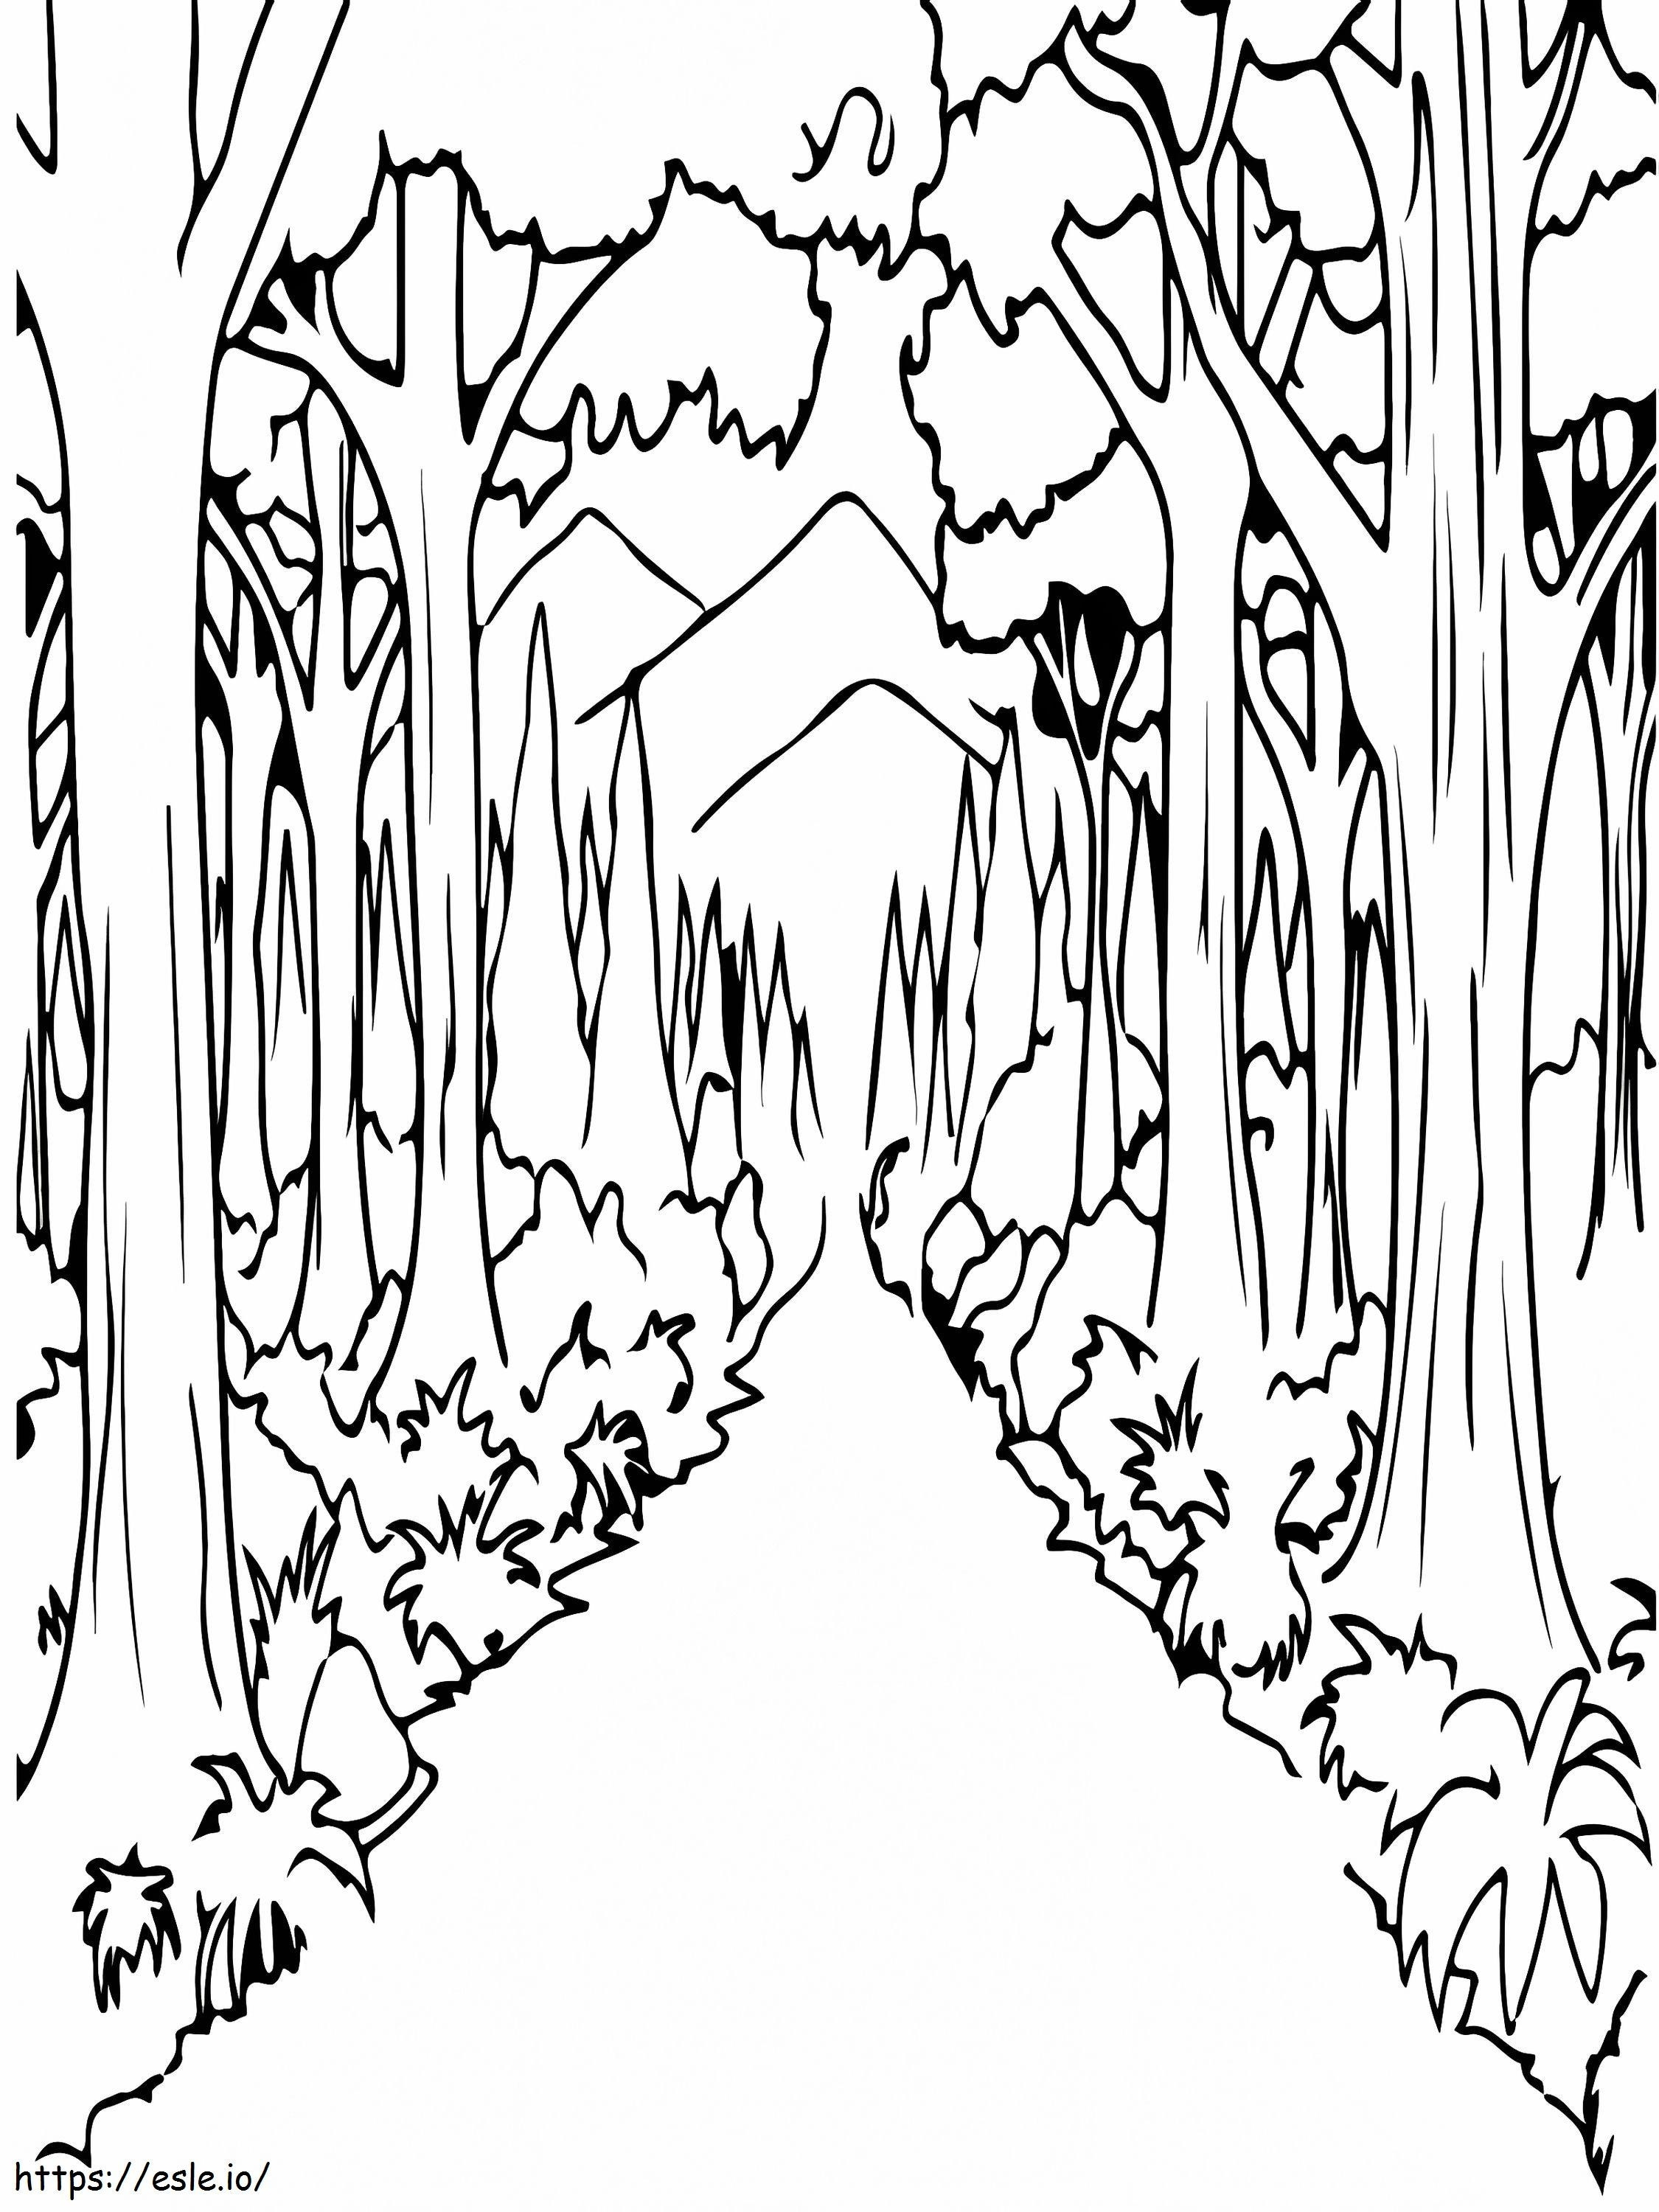 Leśna prosta droga kolorowanka